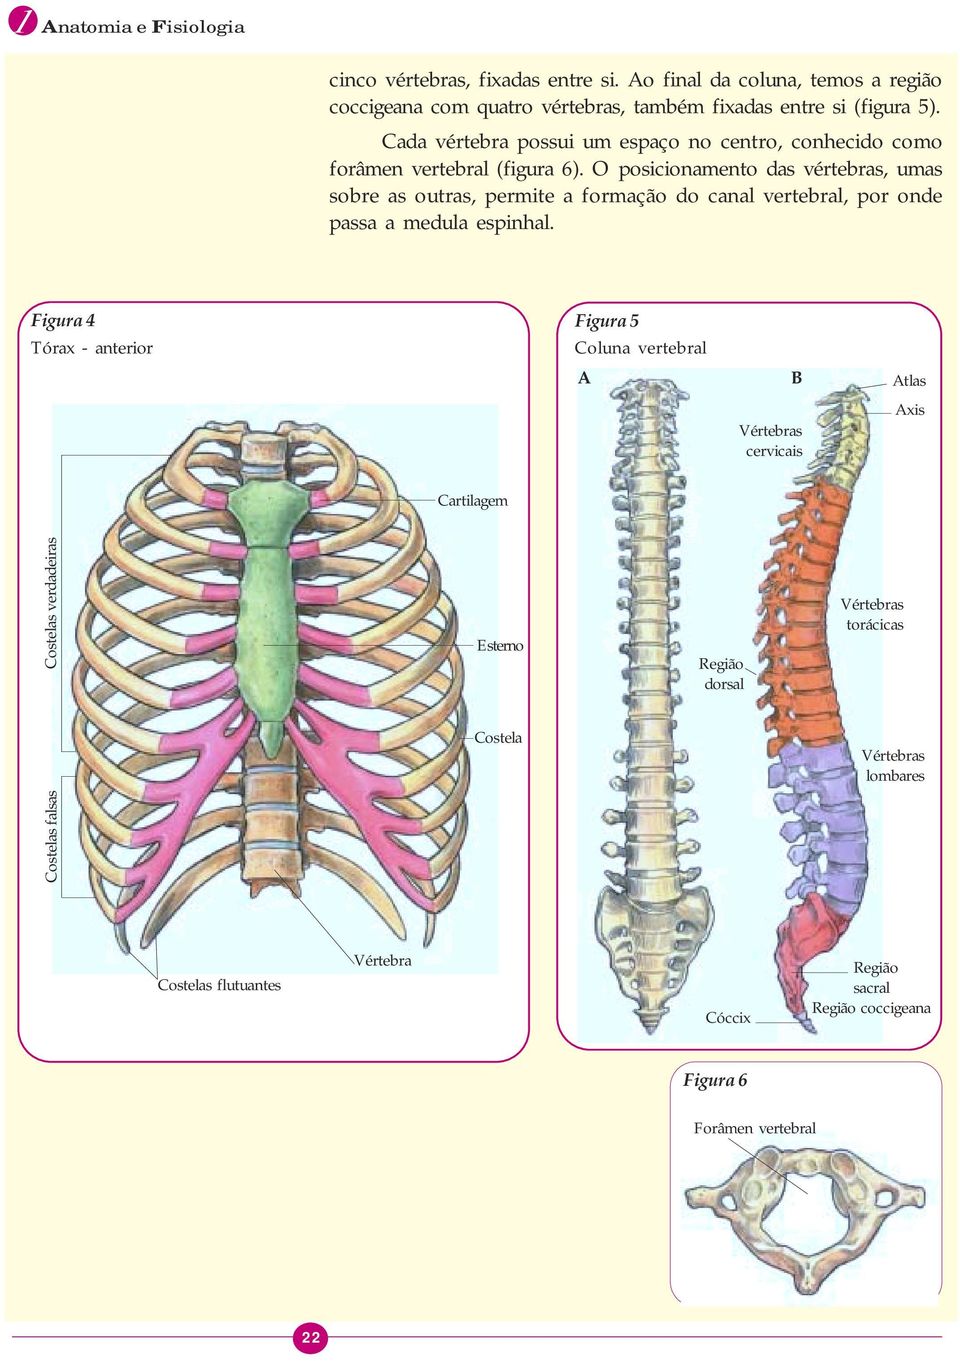 O posicionamento das vértebras, umas sobre as outras, permite a formação do canal vertebral, por onde passa a medula espinhal.